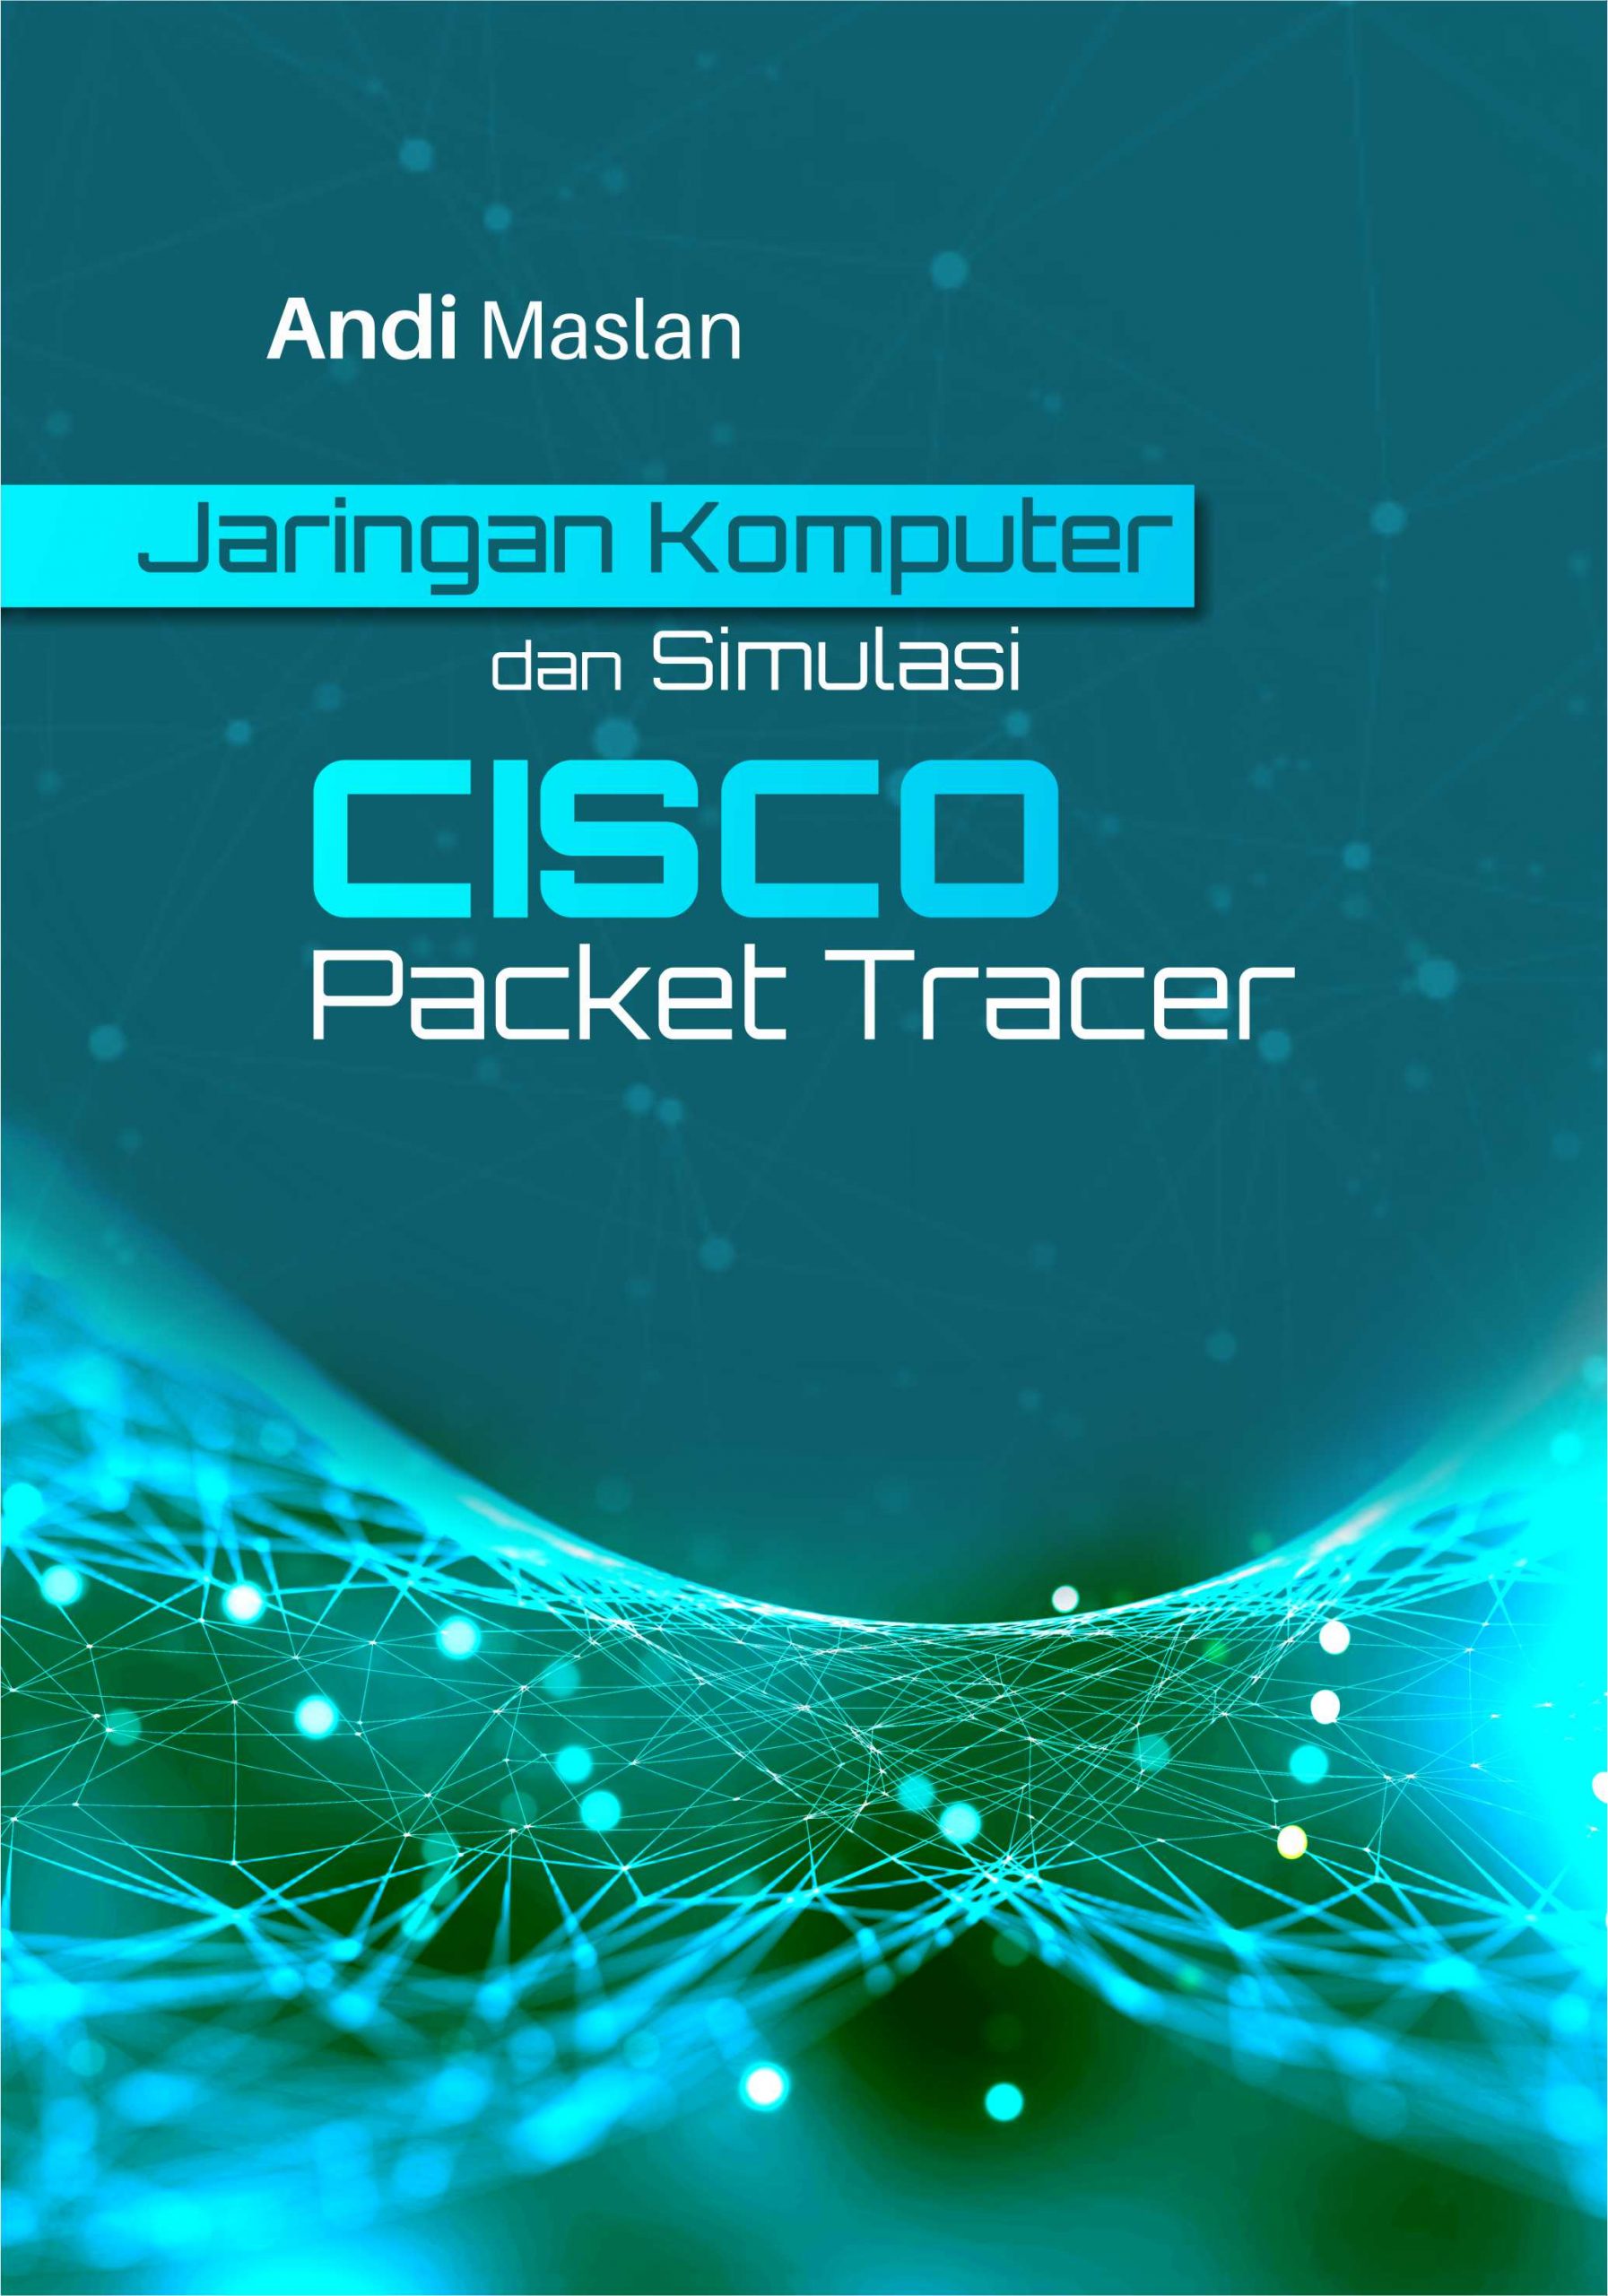 Buku Jaringan Komputer dan Simulasi CISCO Packet Tracer